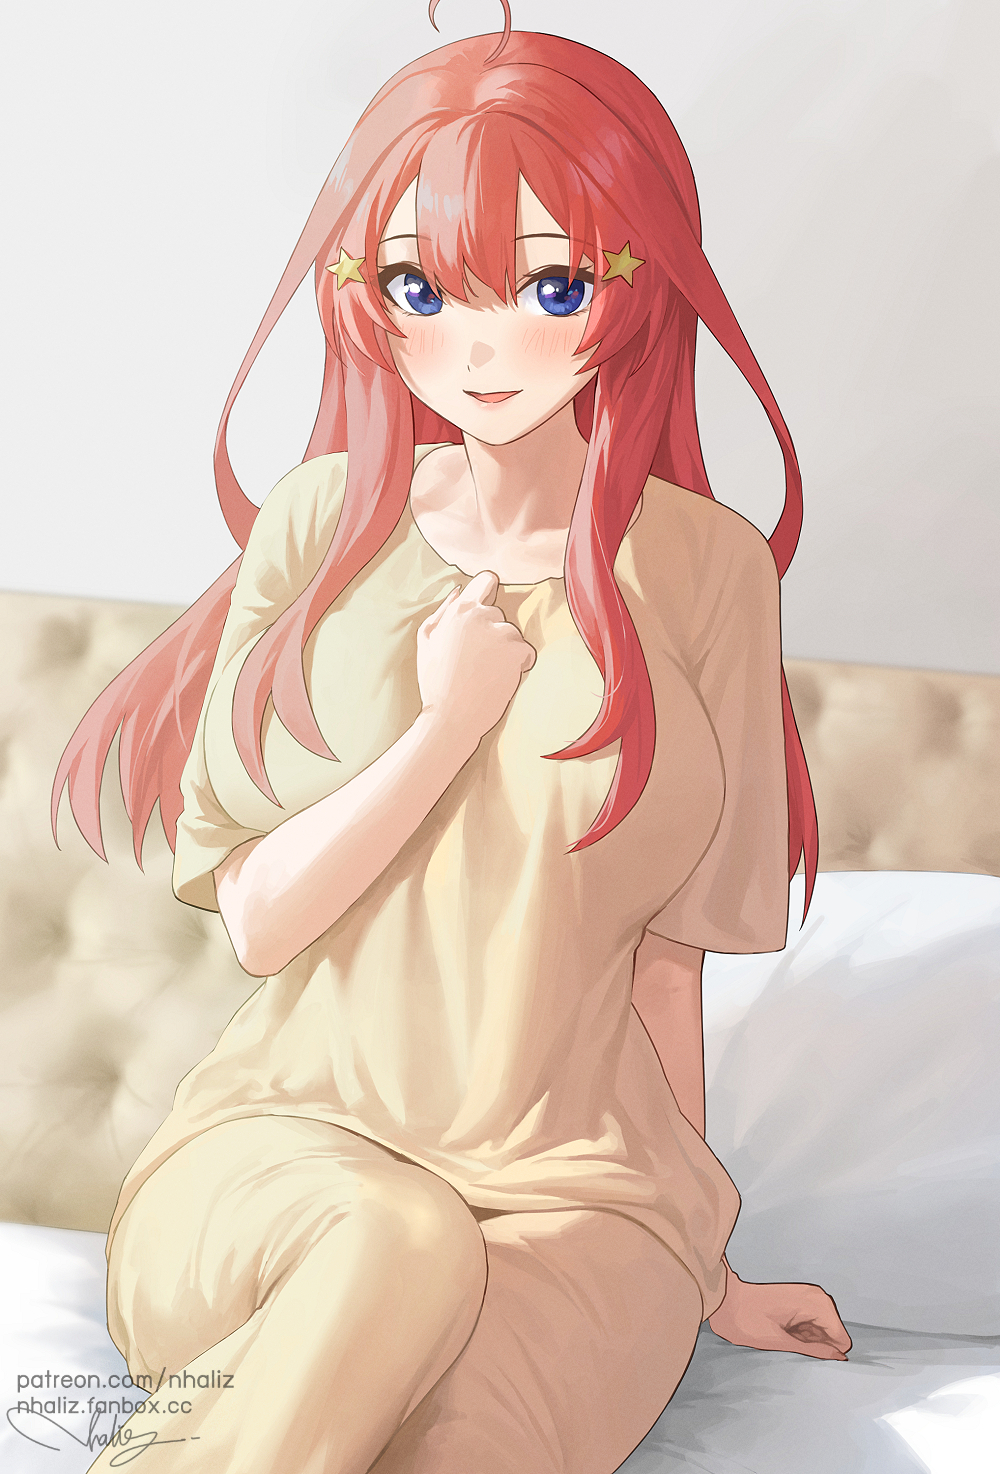 Anime 1000x1474 5-toubun no Hanayome pyjamas in bed short sleeves blushing open mouth smiling ahoge thighs sitting bangs anime girls Nakano Itsuki artwork anime nhaliz